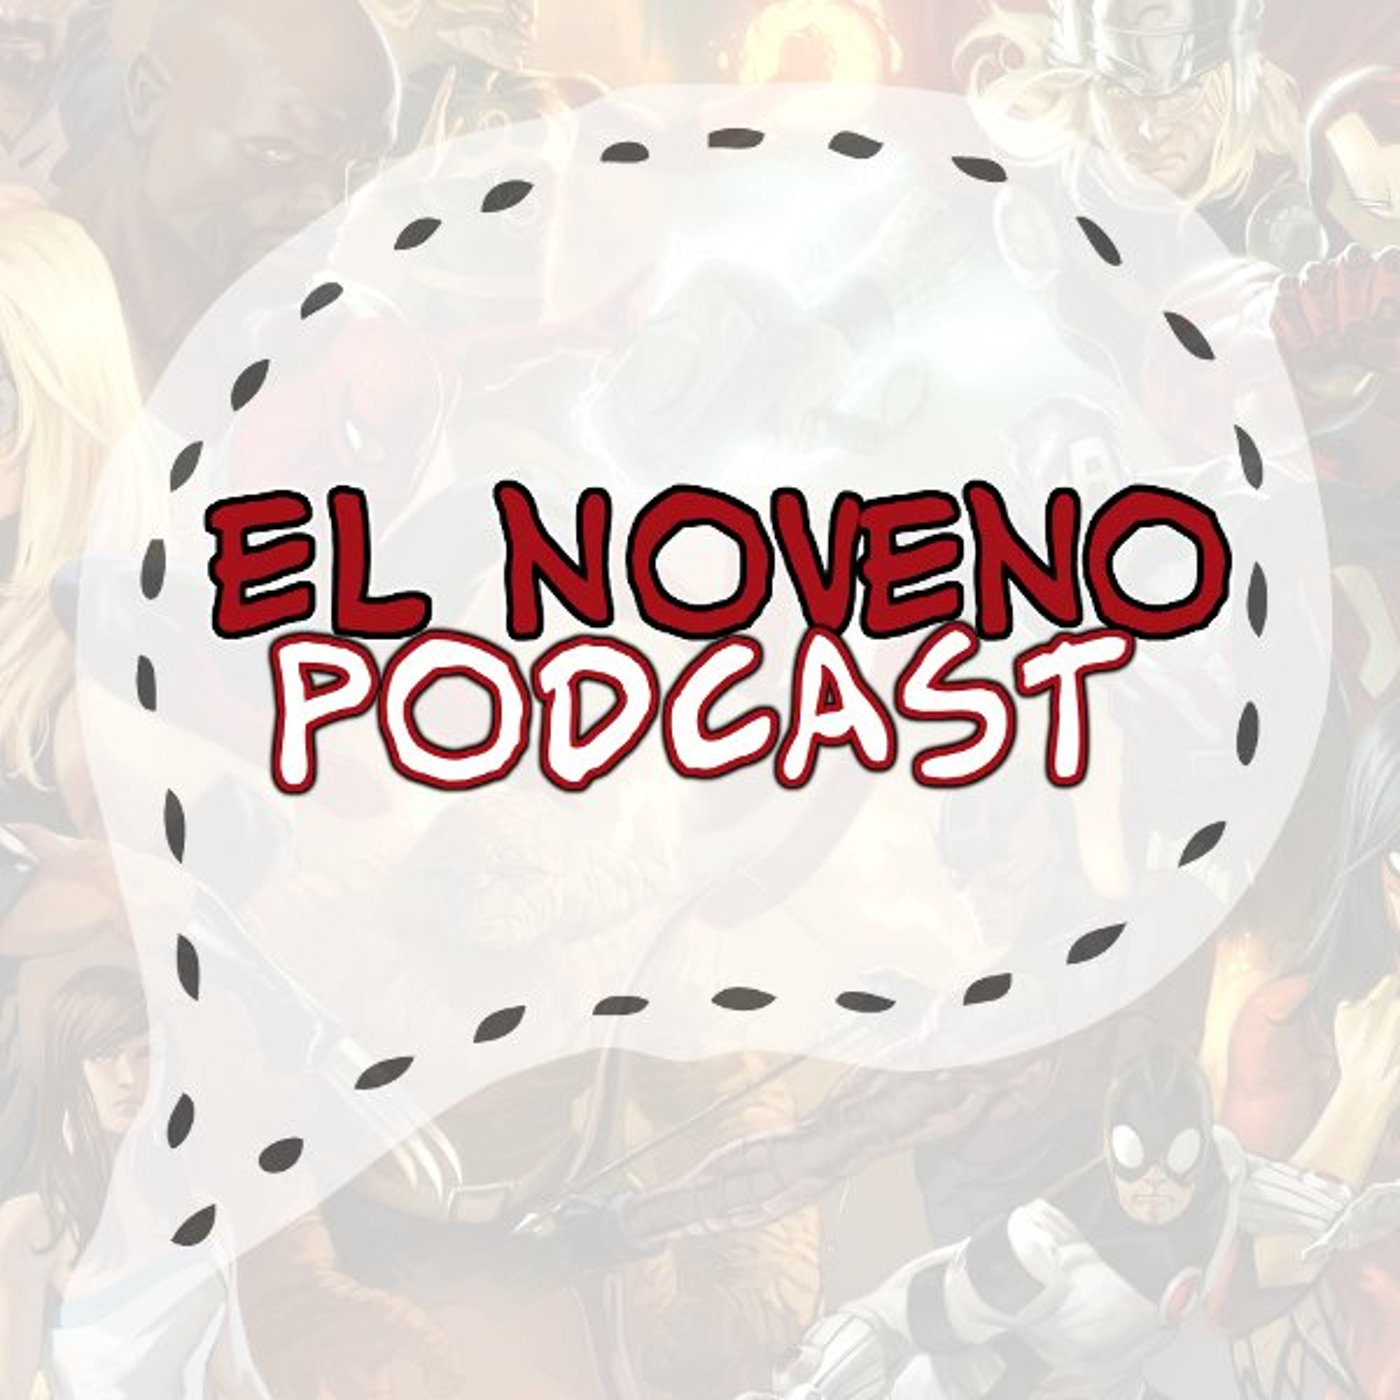 El Noveno Podcast